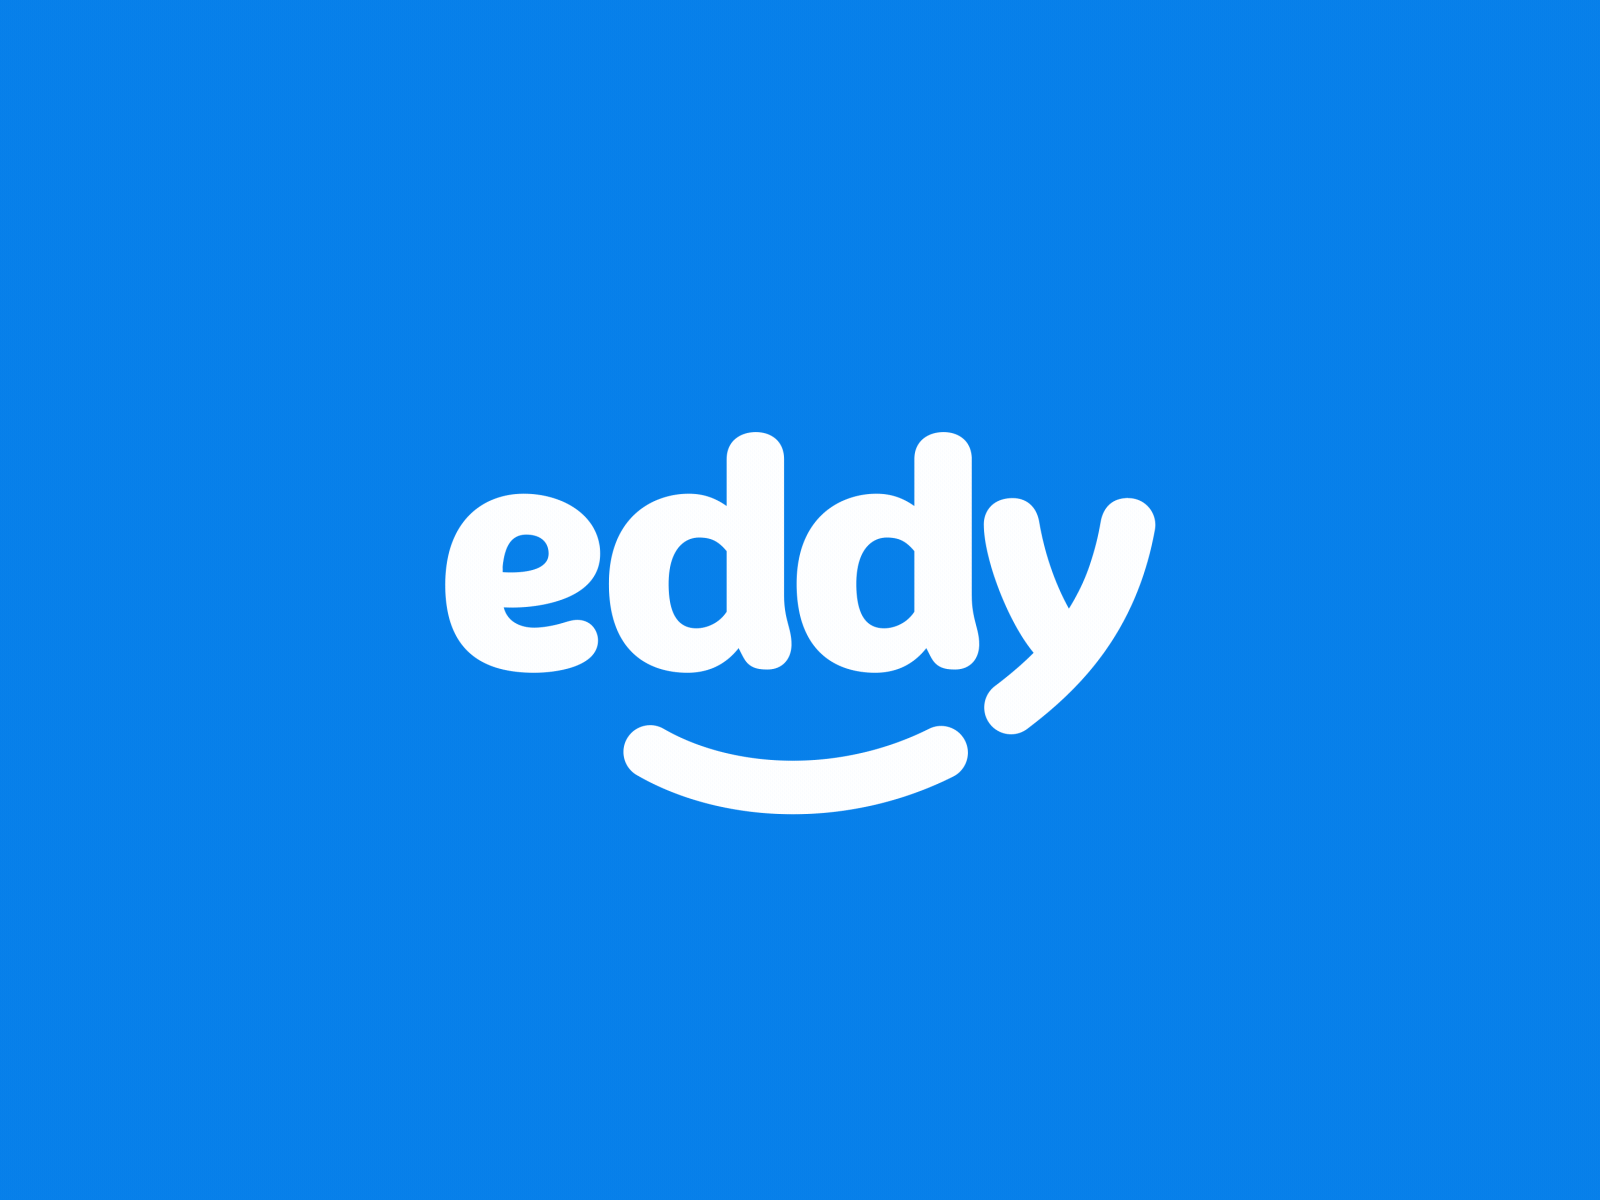 Eddy logo animation